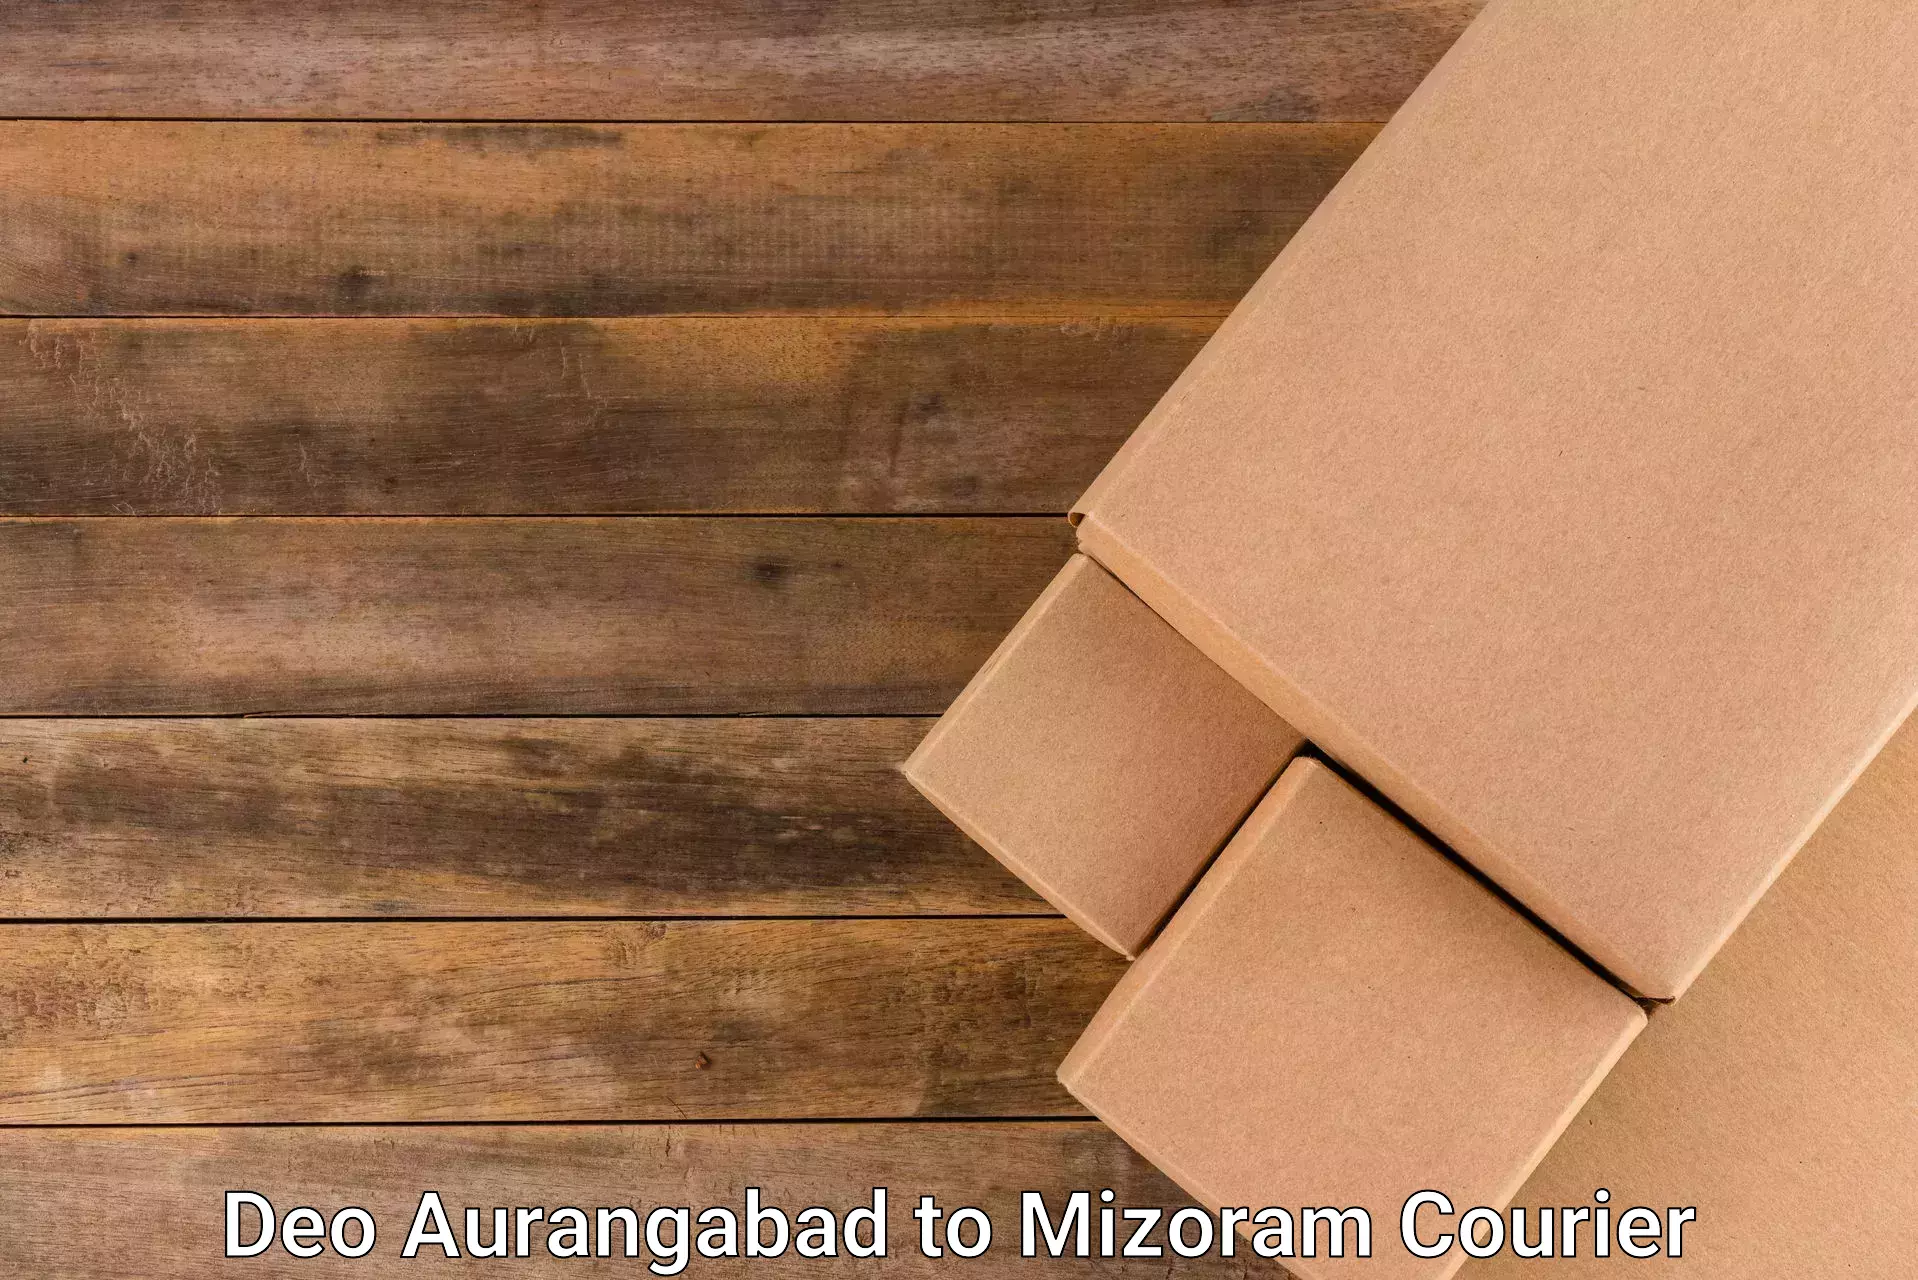 Efficient parcel transport Deo Aurangabad to Lawngtlai